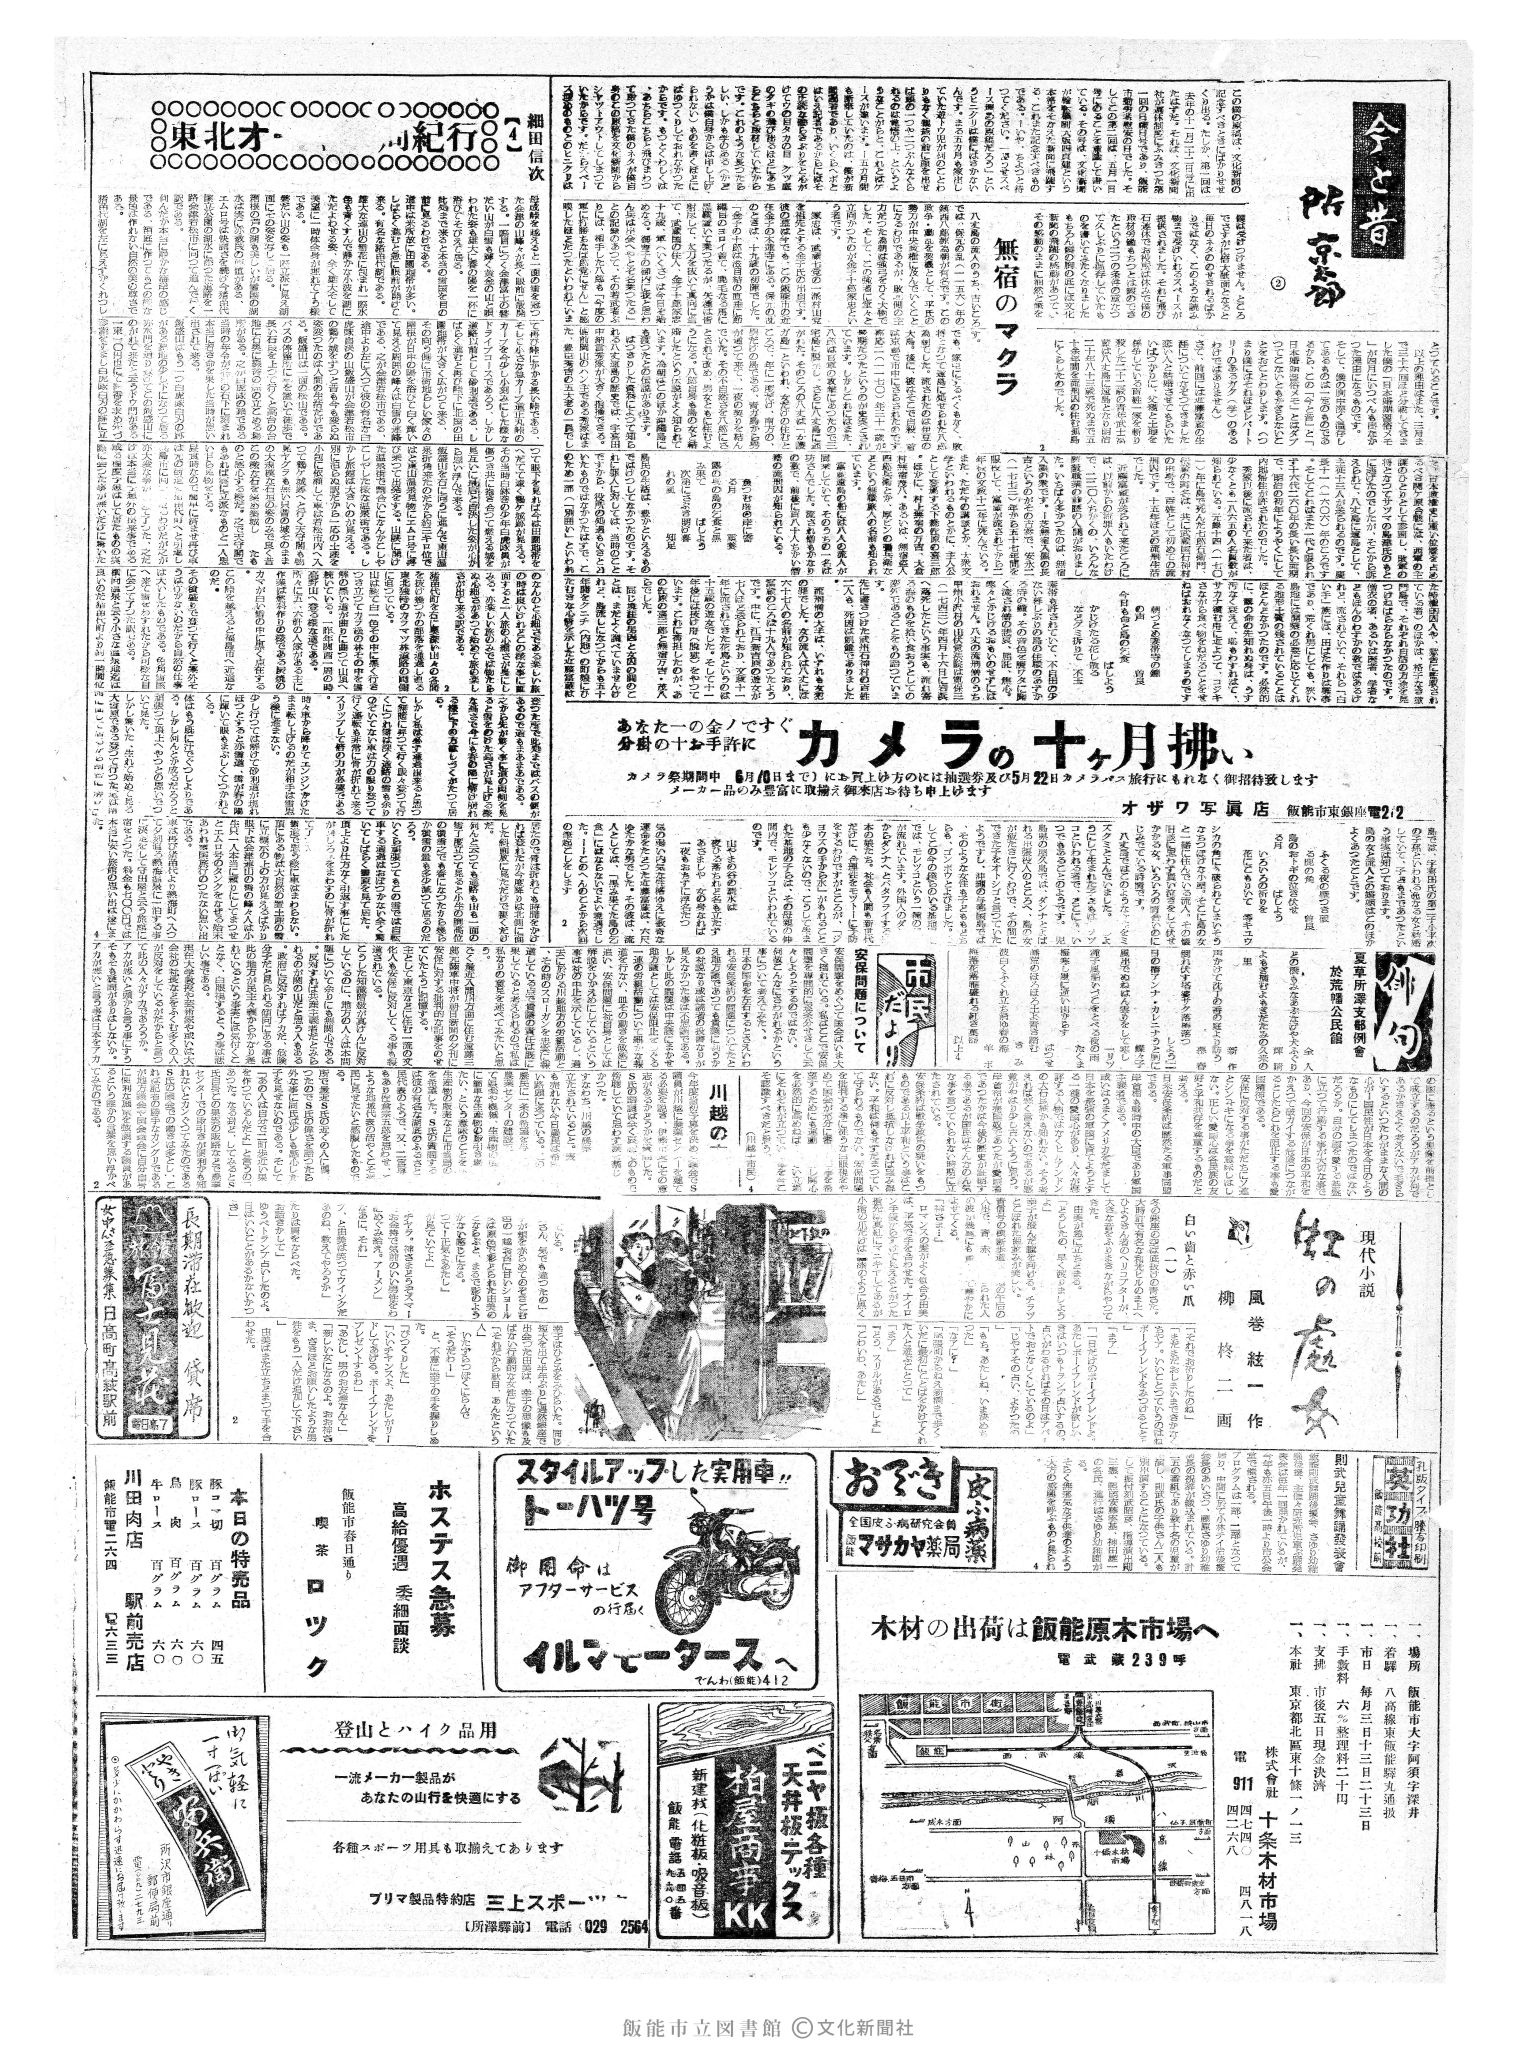 昭和35年5月1日2面 (第3519号) 3ページと同じ内容が印刷されています